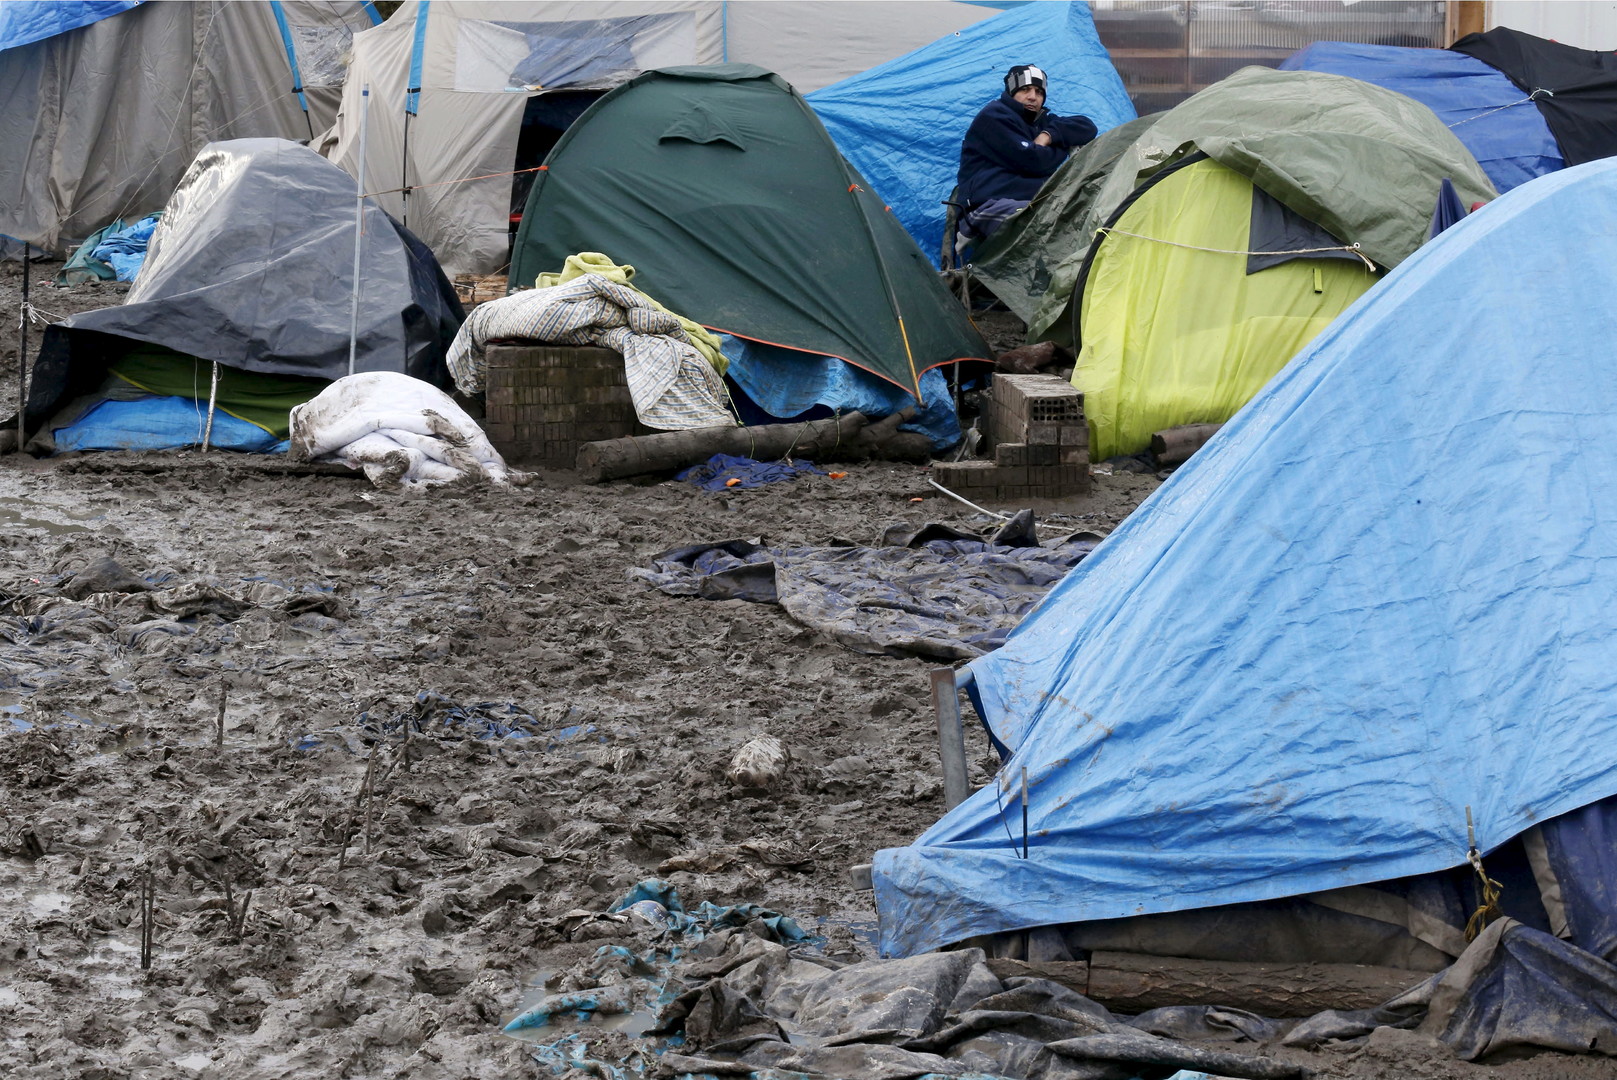 De fortes pluies dégradent les conditions humanitaires dans le camp de Grande-Synthe (PHOTOS)